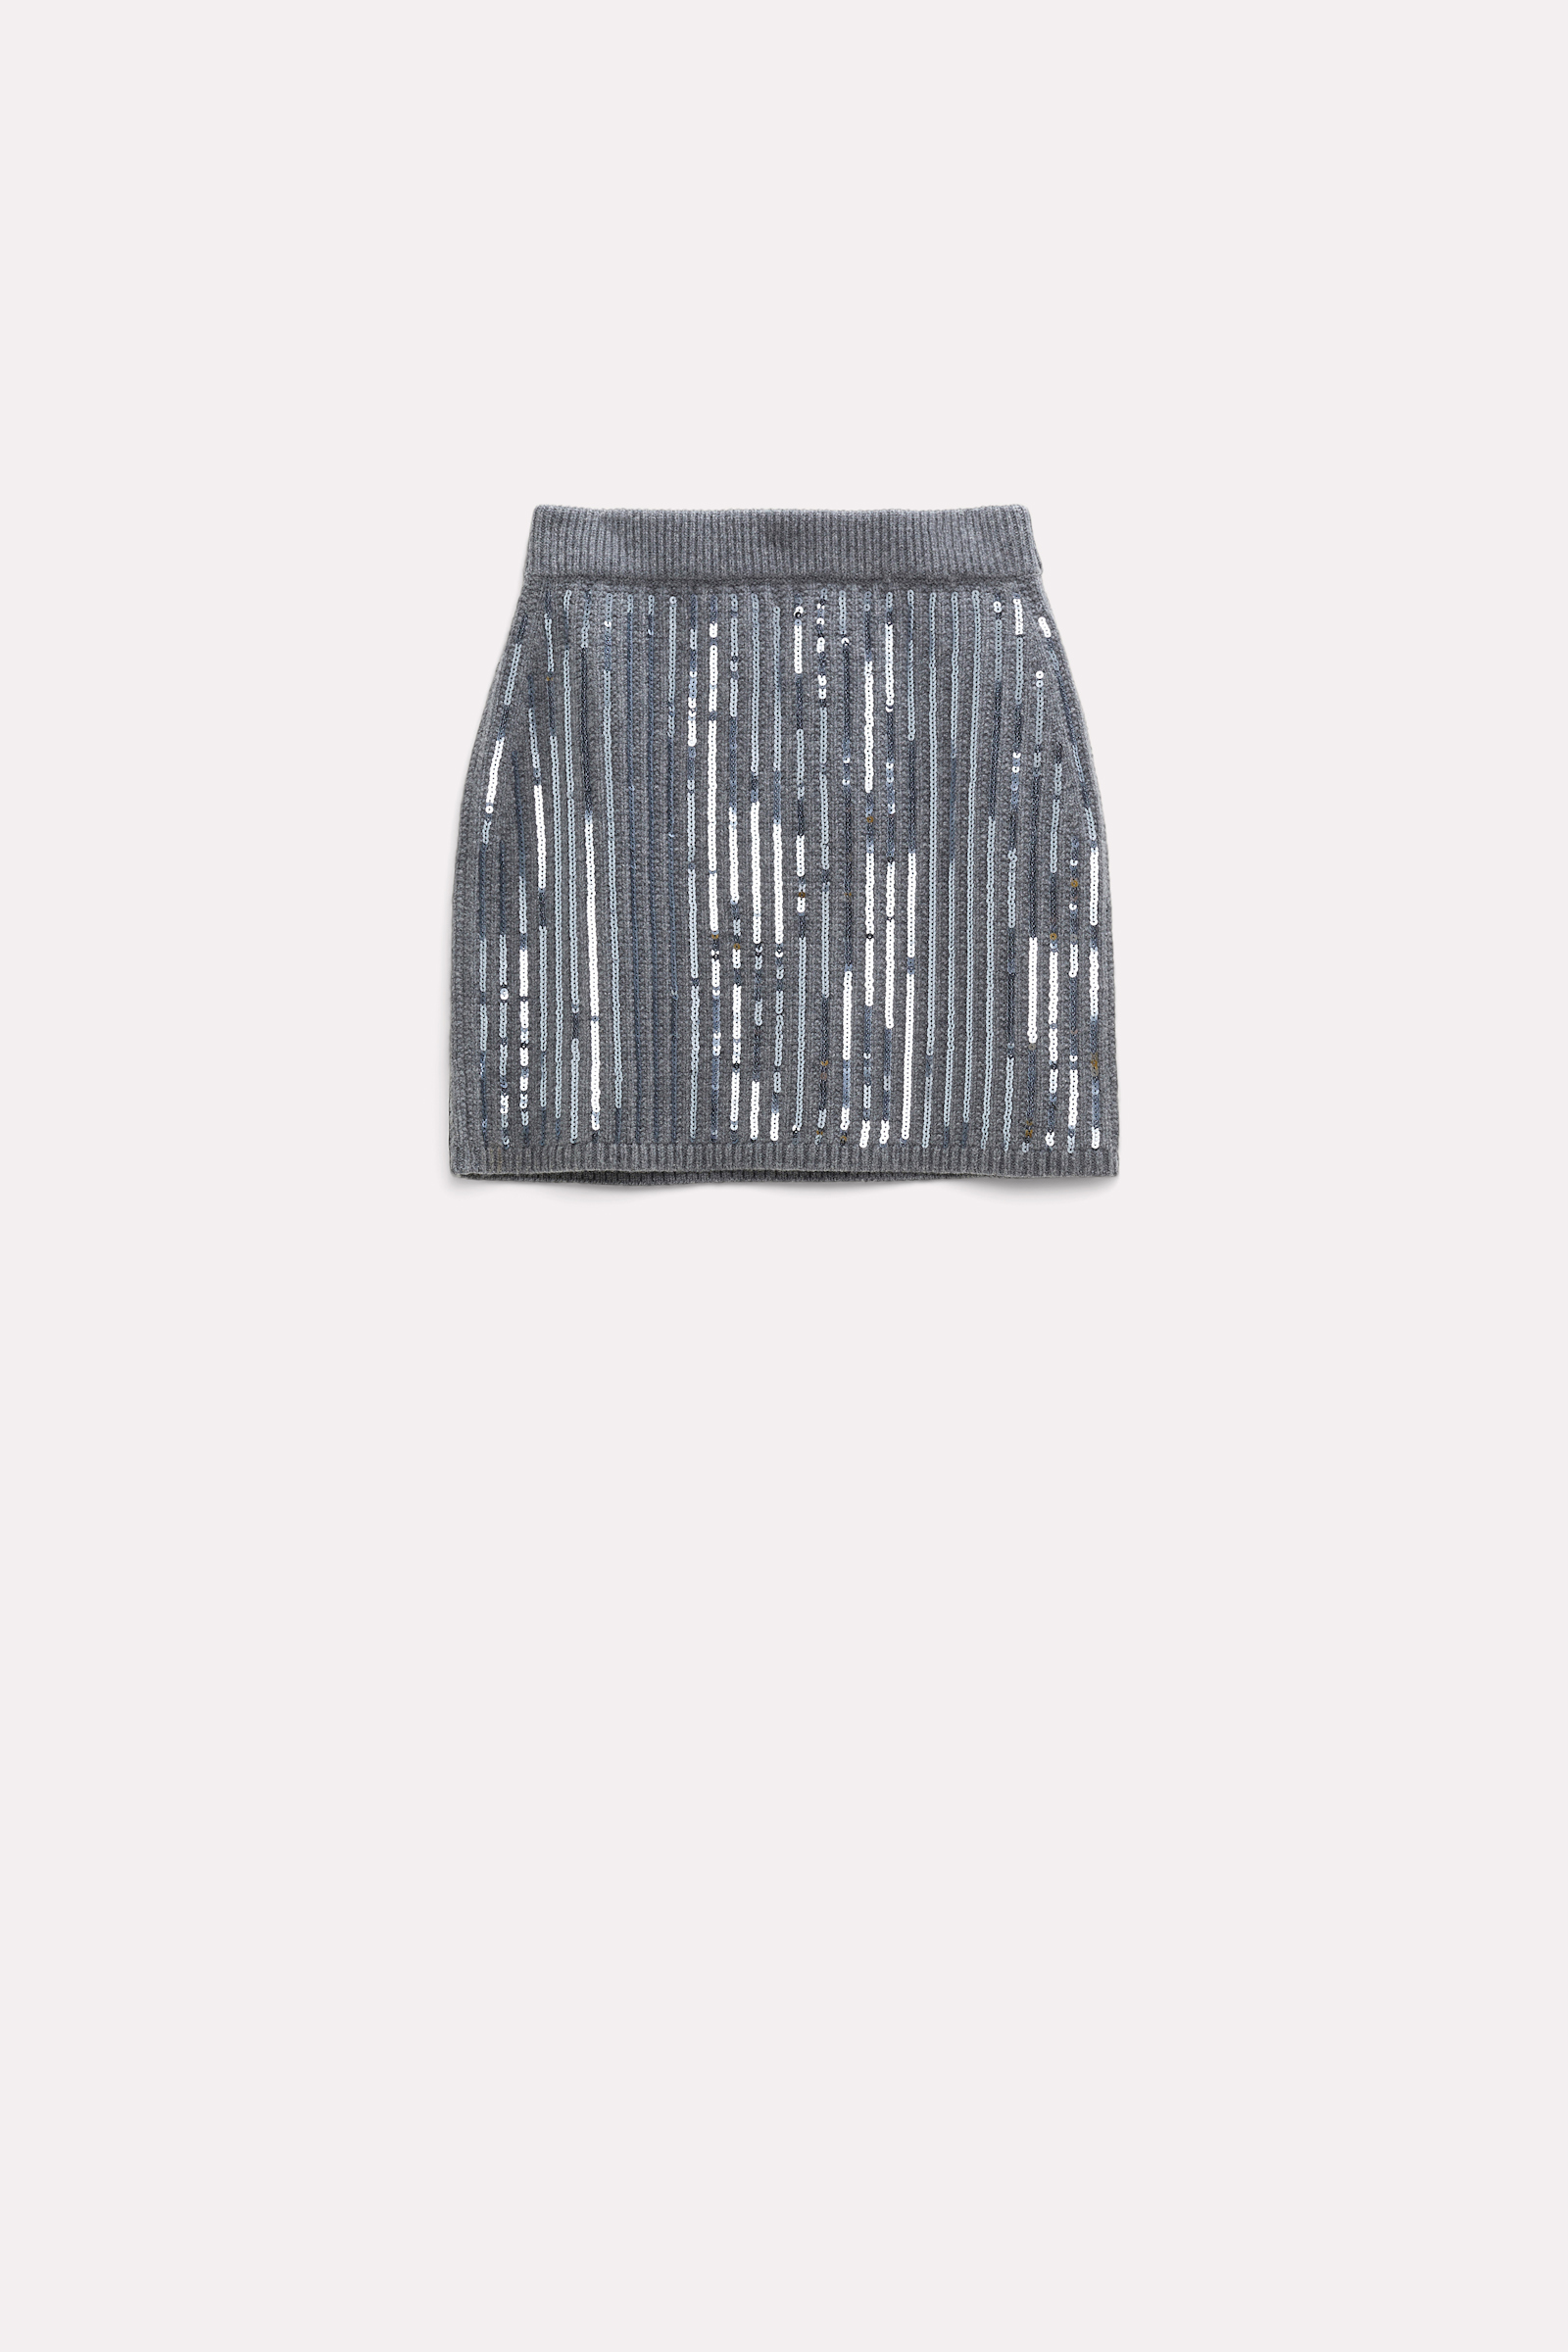 Dorothee Schumacher Mini skirt with sequins true grey